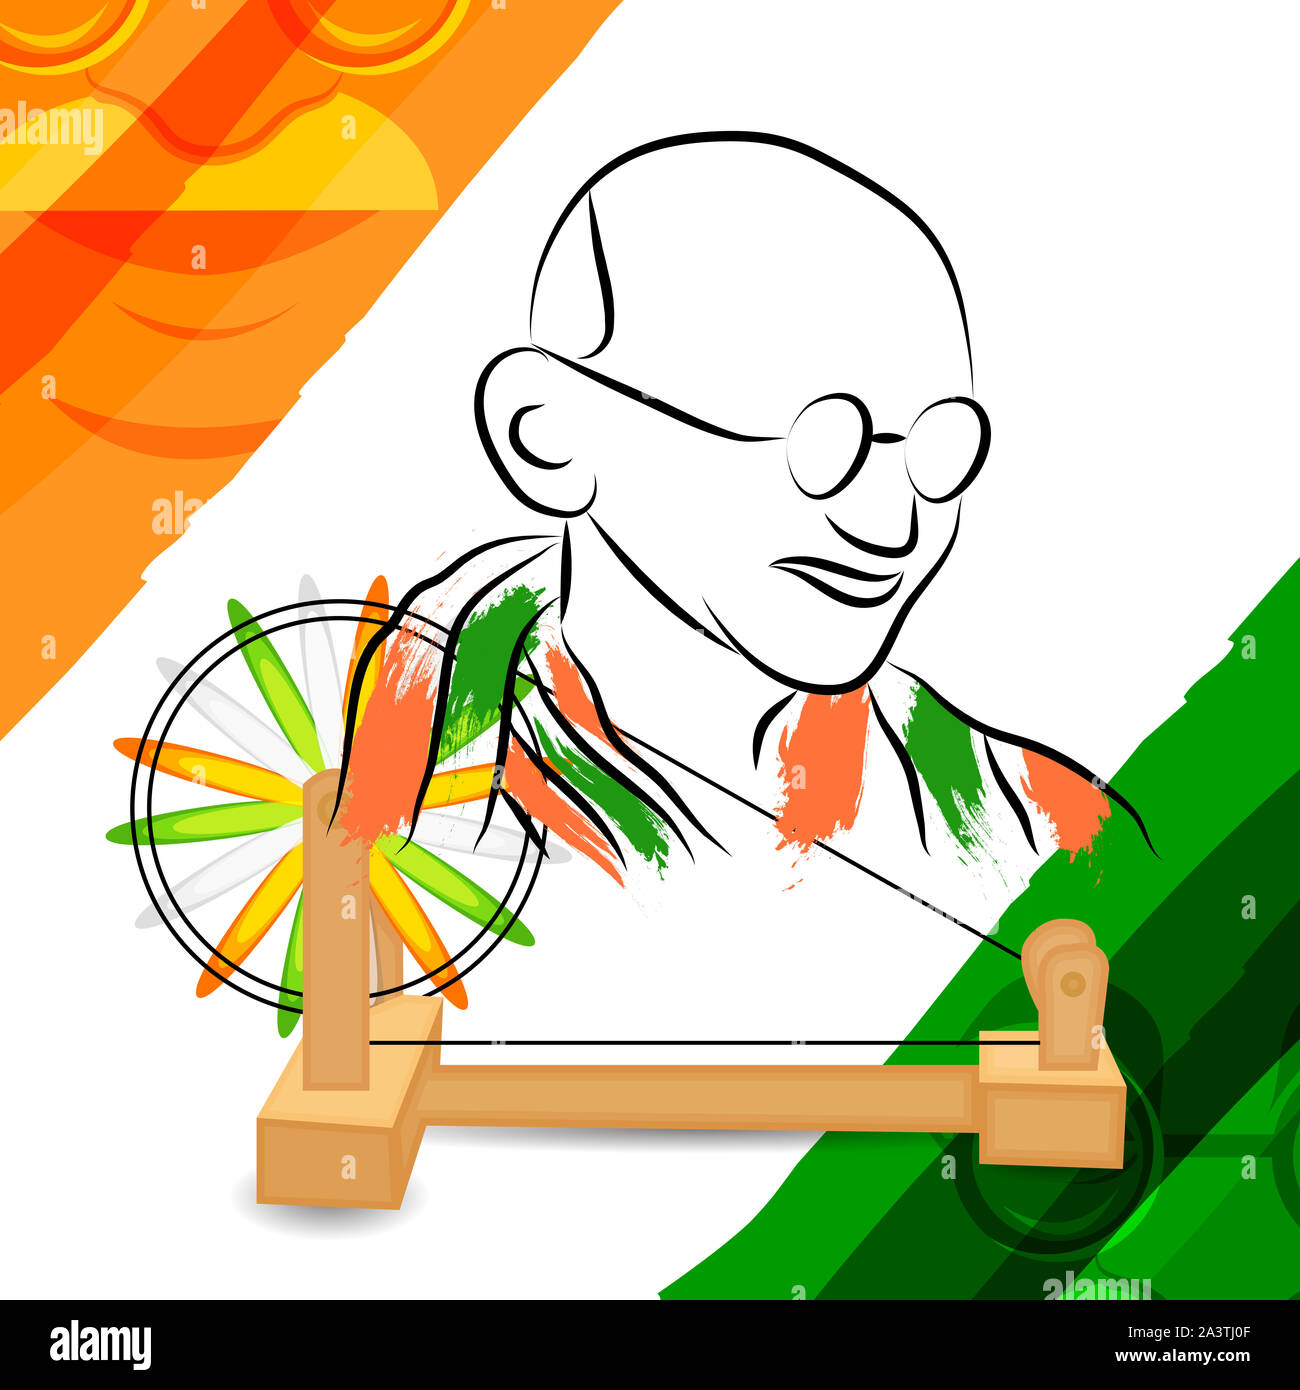 Gandhi Jayanti Drawing | Gandhi Jayanti Poster Drawing || How To Draw  Gandhi Jayanti Celebration Drawing | Gandhi Ji | Festival 2… | Poster  drawing, Jayanti, Gandhi